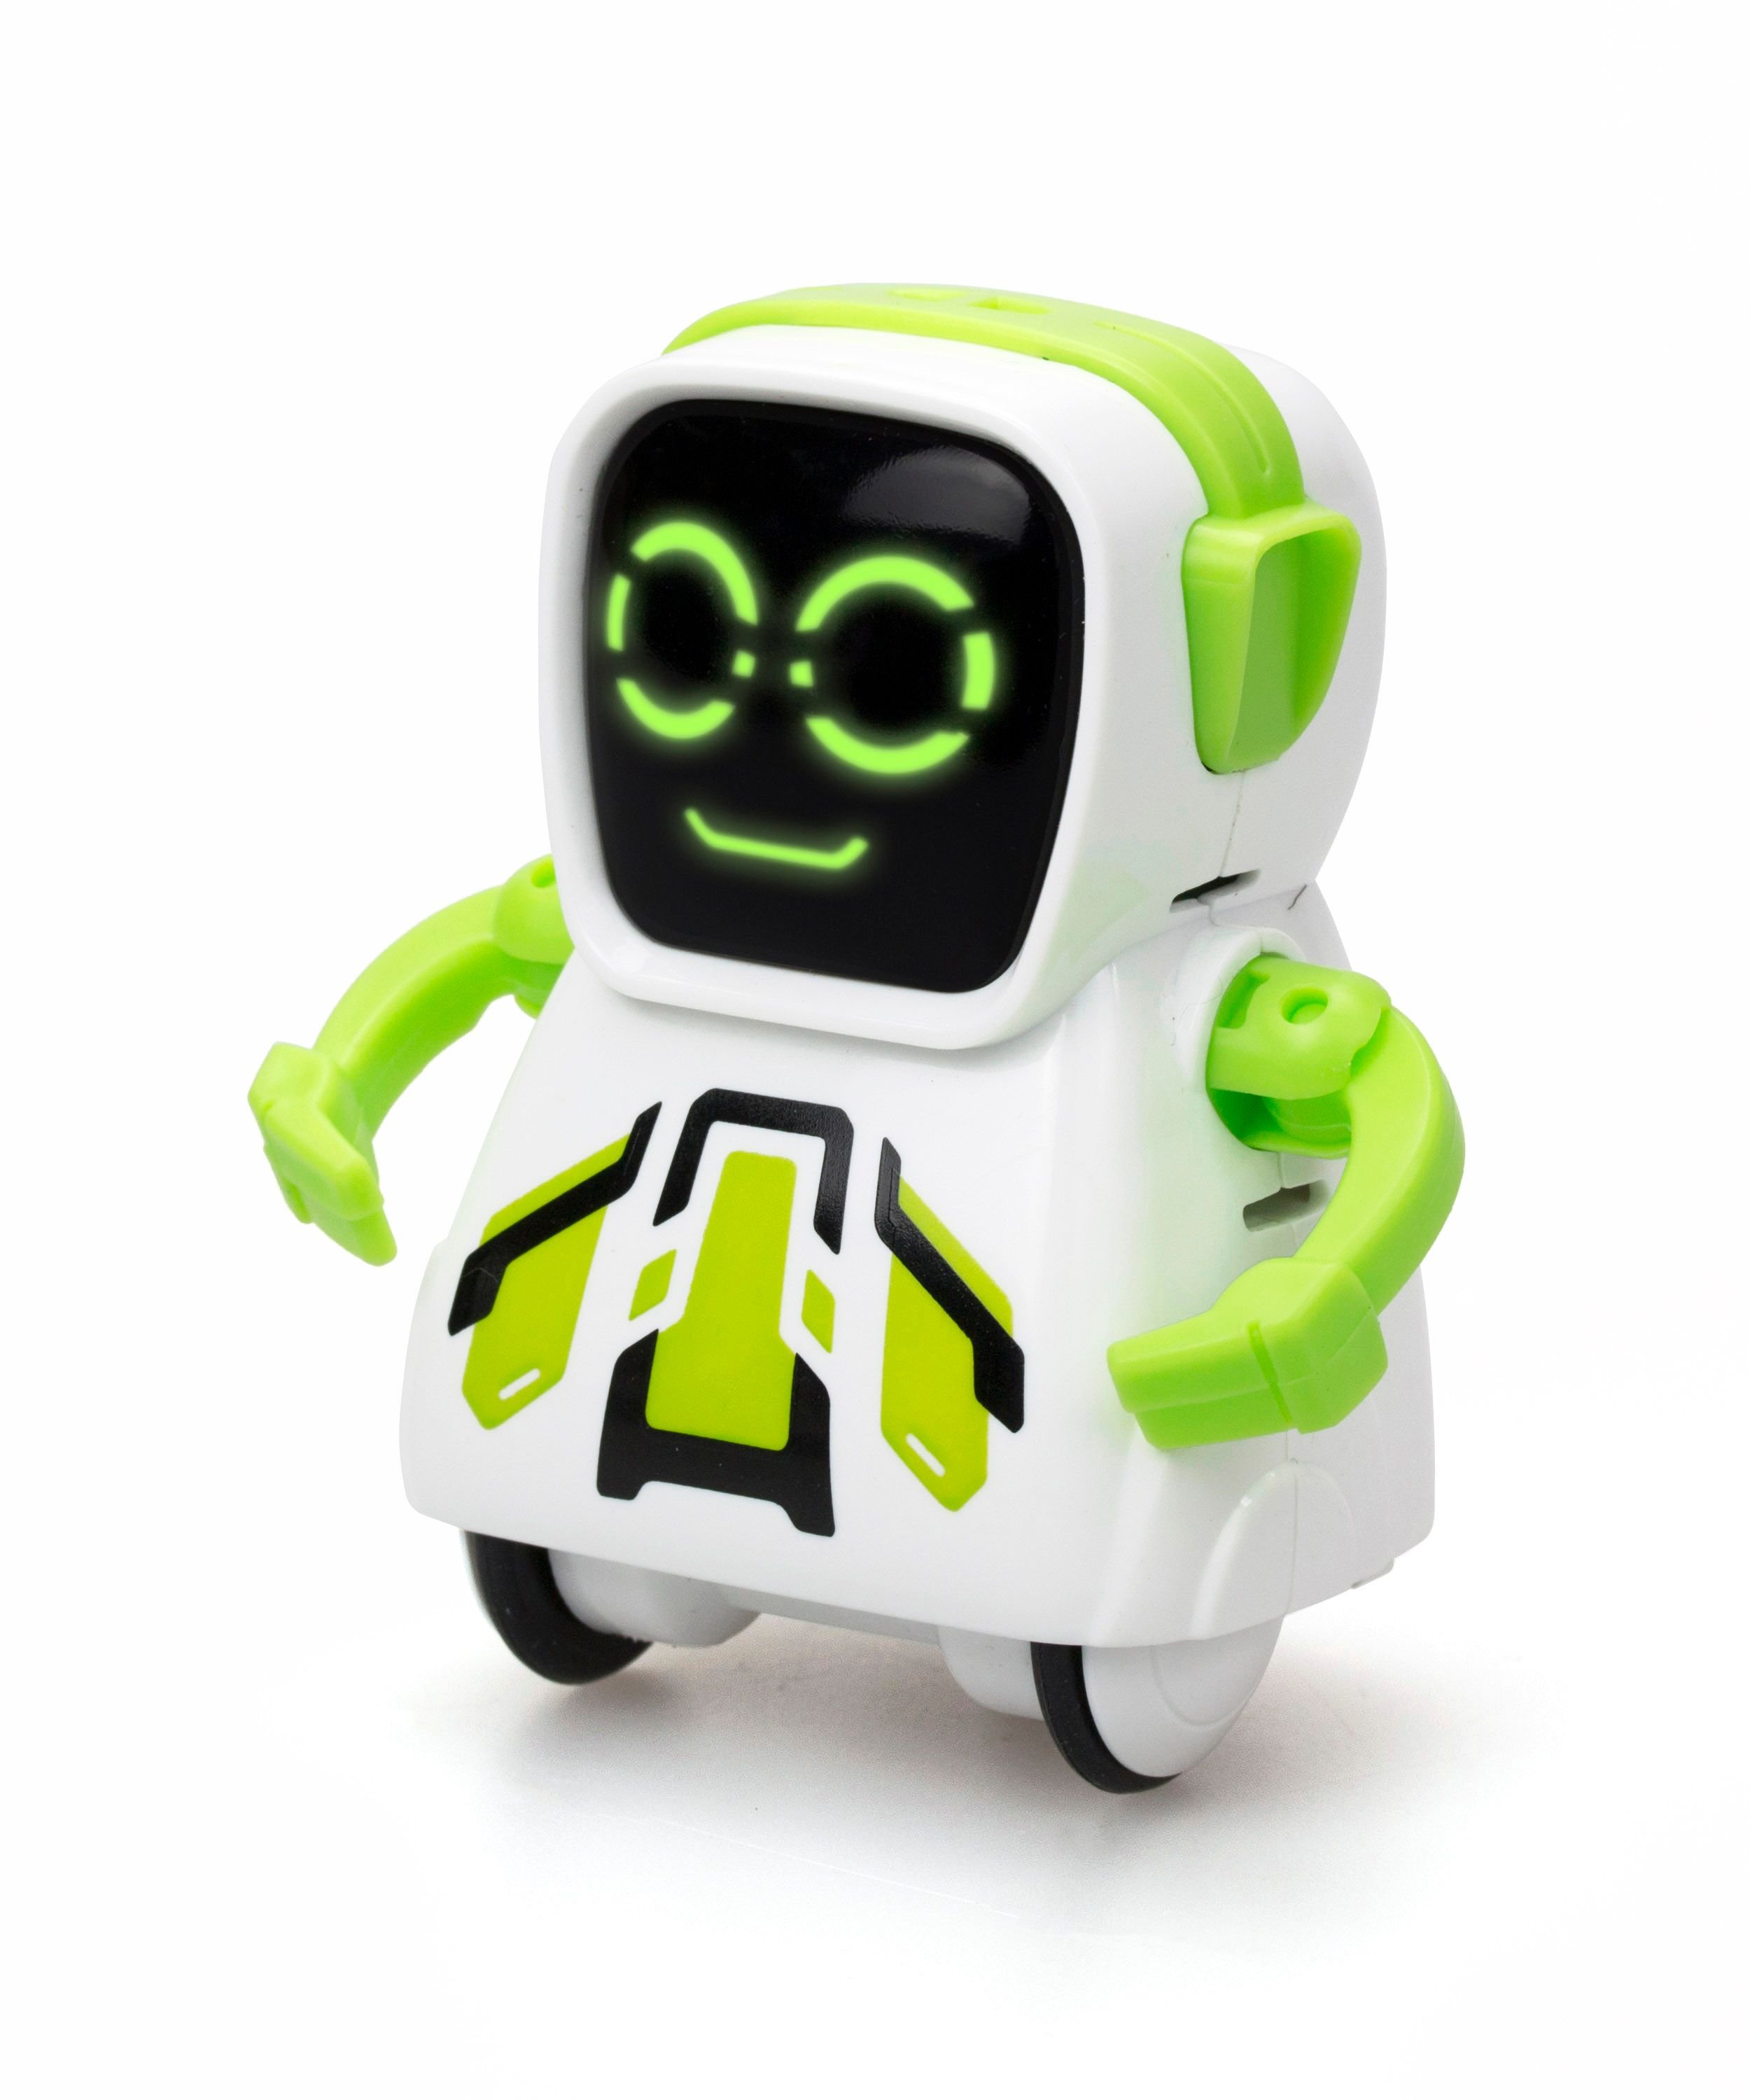 Buy - Pokibot Square Robot Green